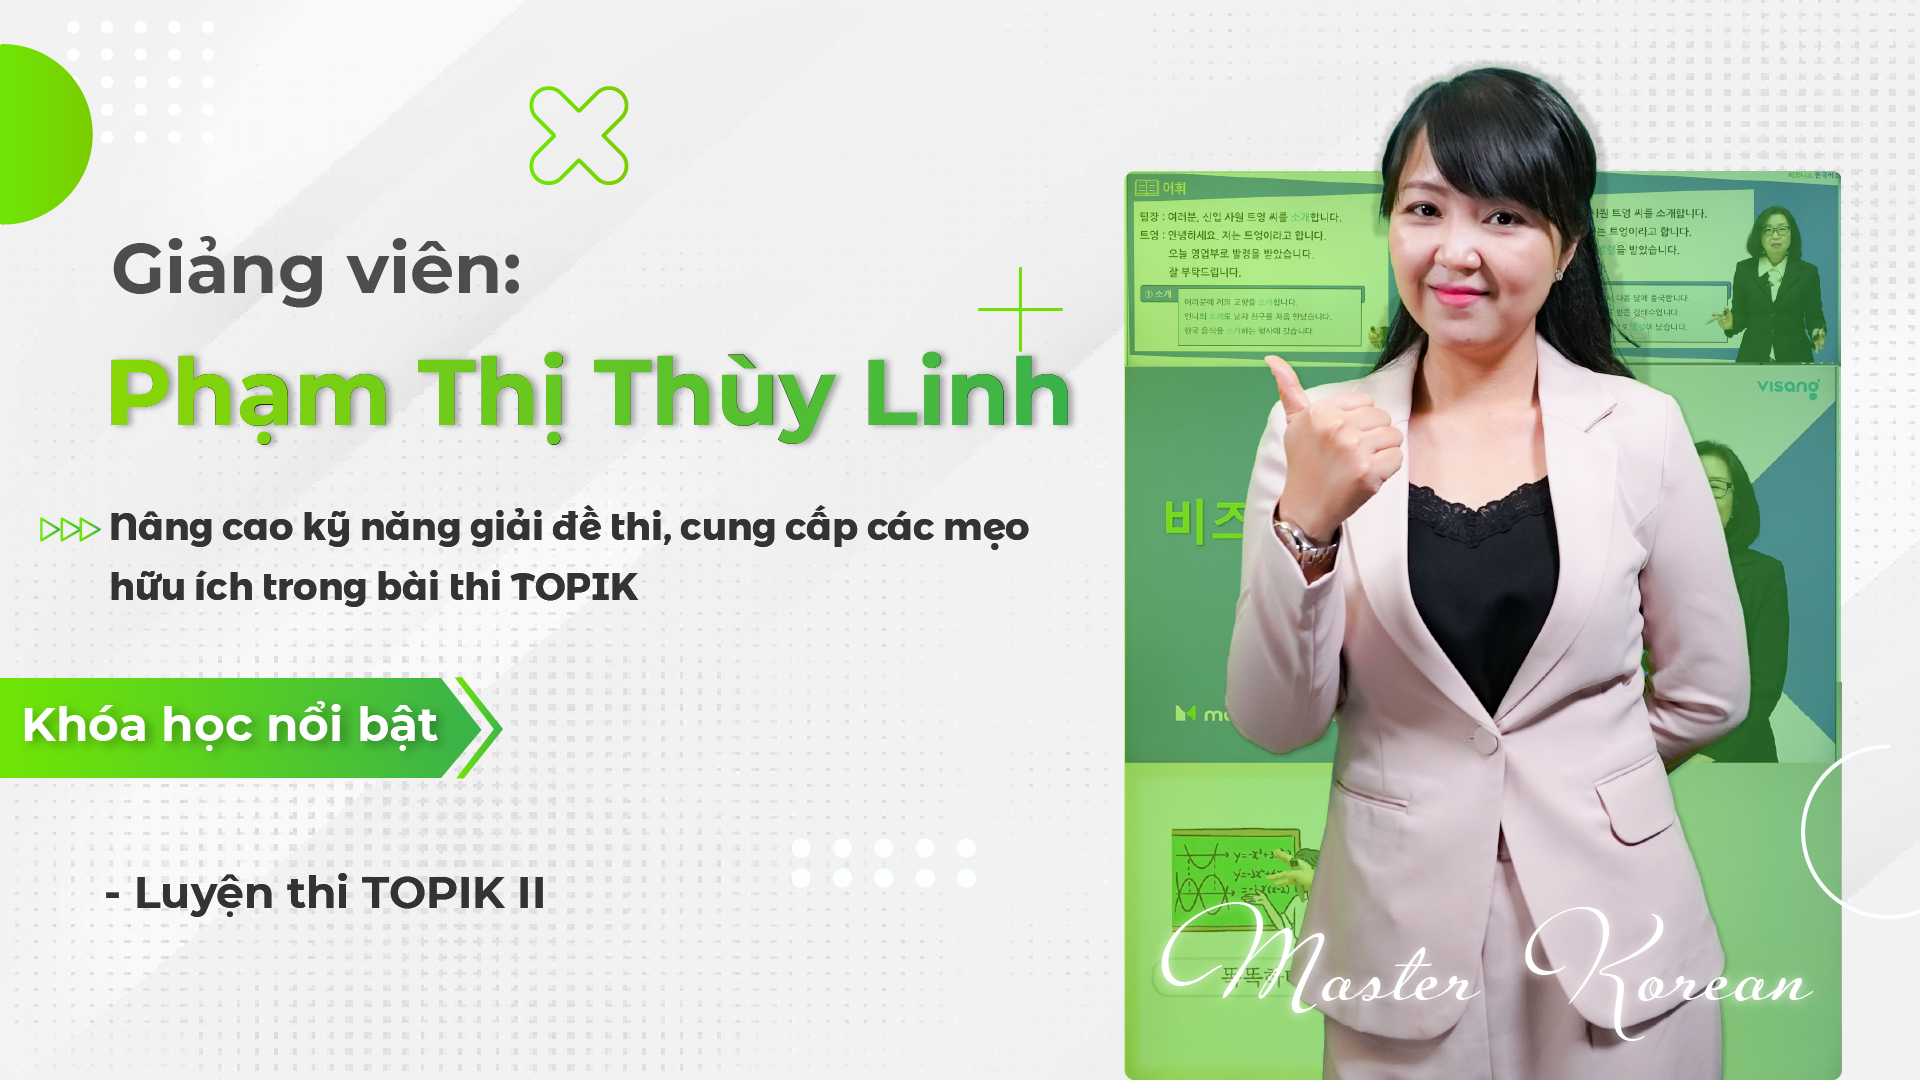 Phạm Thị Thùy Linh